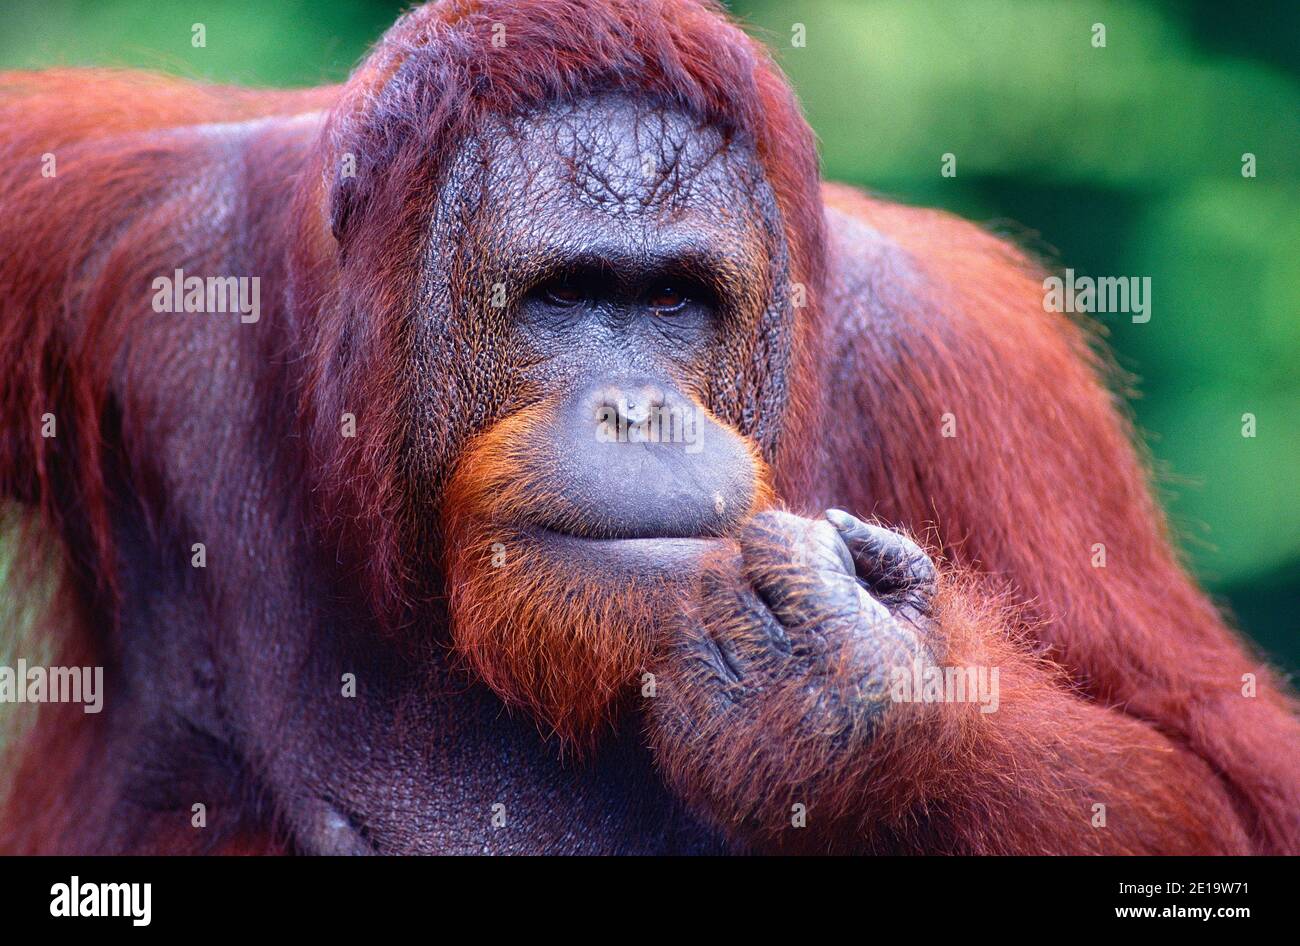 Orang Utan, Pongo pygmaeus, Hominidae, adulto, Ritratto, animale, mammifero, Zoo, Singapore Foto Stock